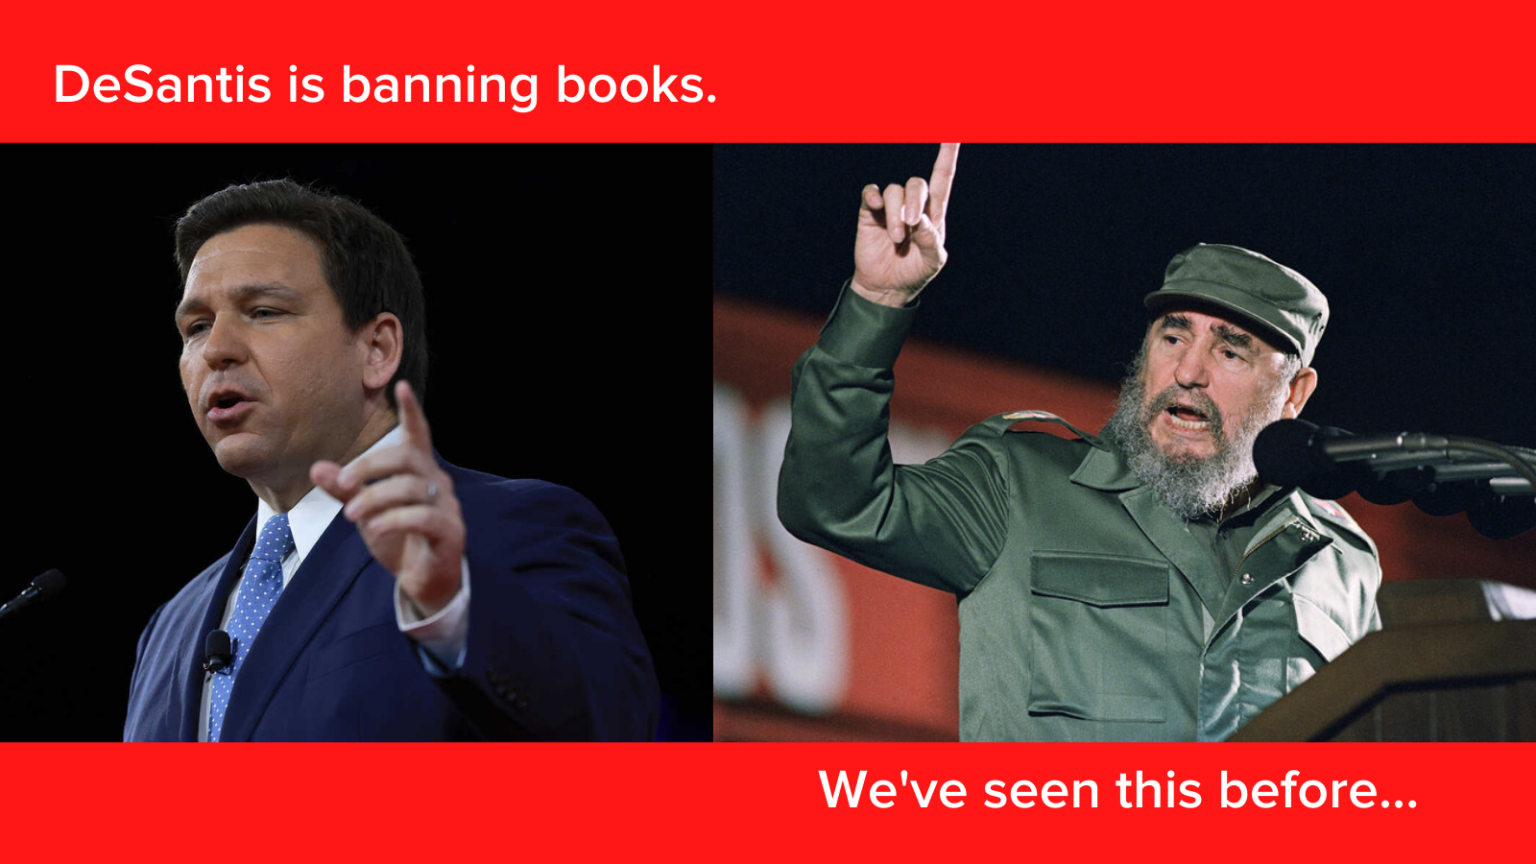 ДеСантіс, як і Кастро, забороняє книги